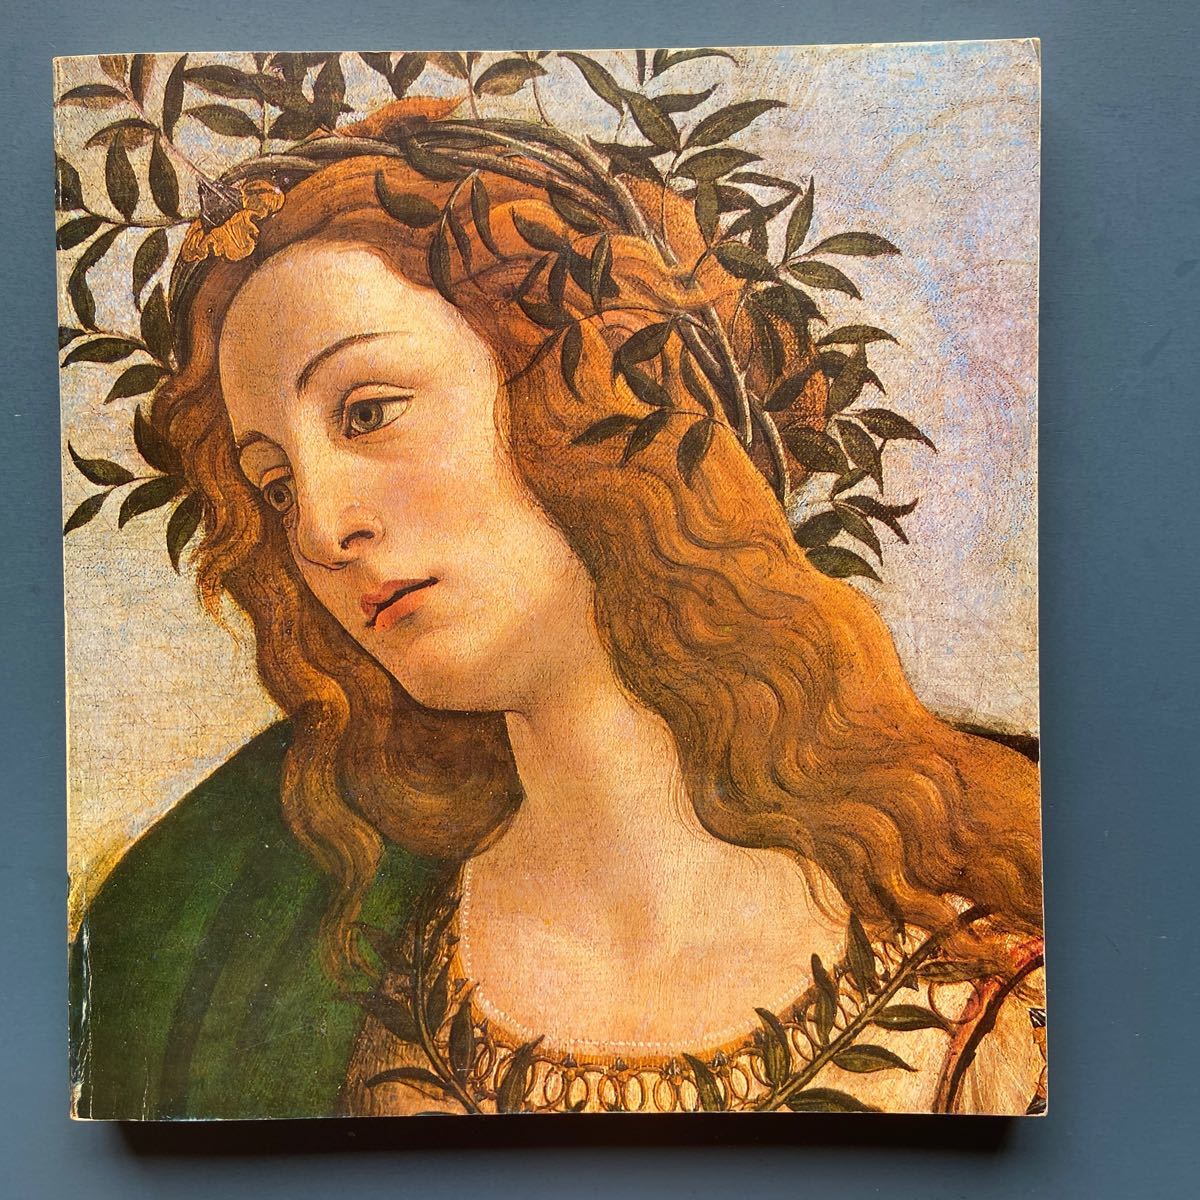 図録 イタリア･ルネッサンス美術展 1980-81, 絵画, 画集, 作品集, 図録